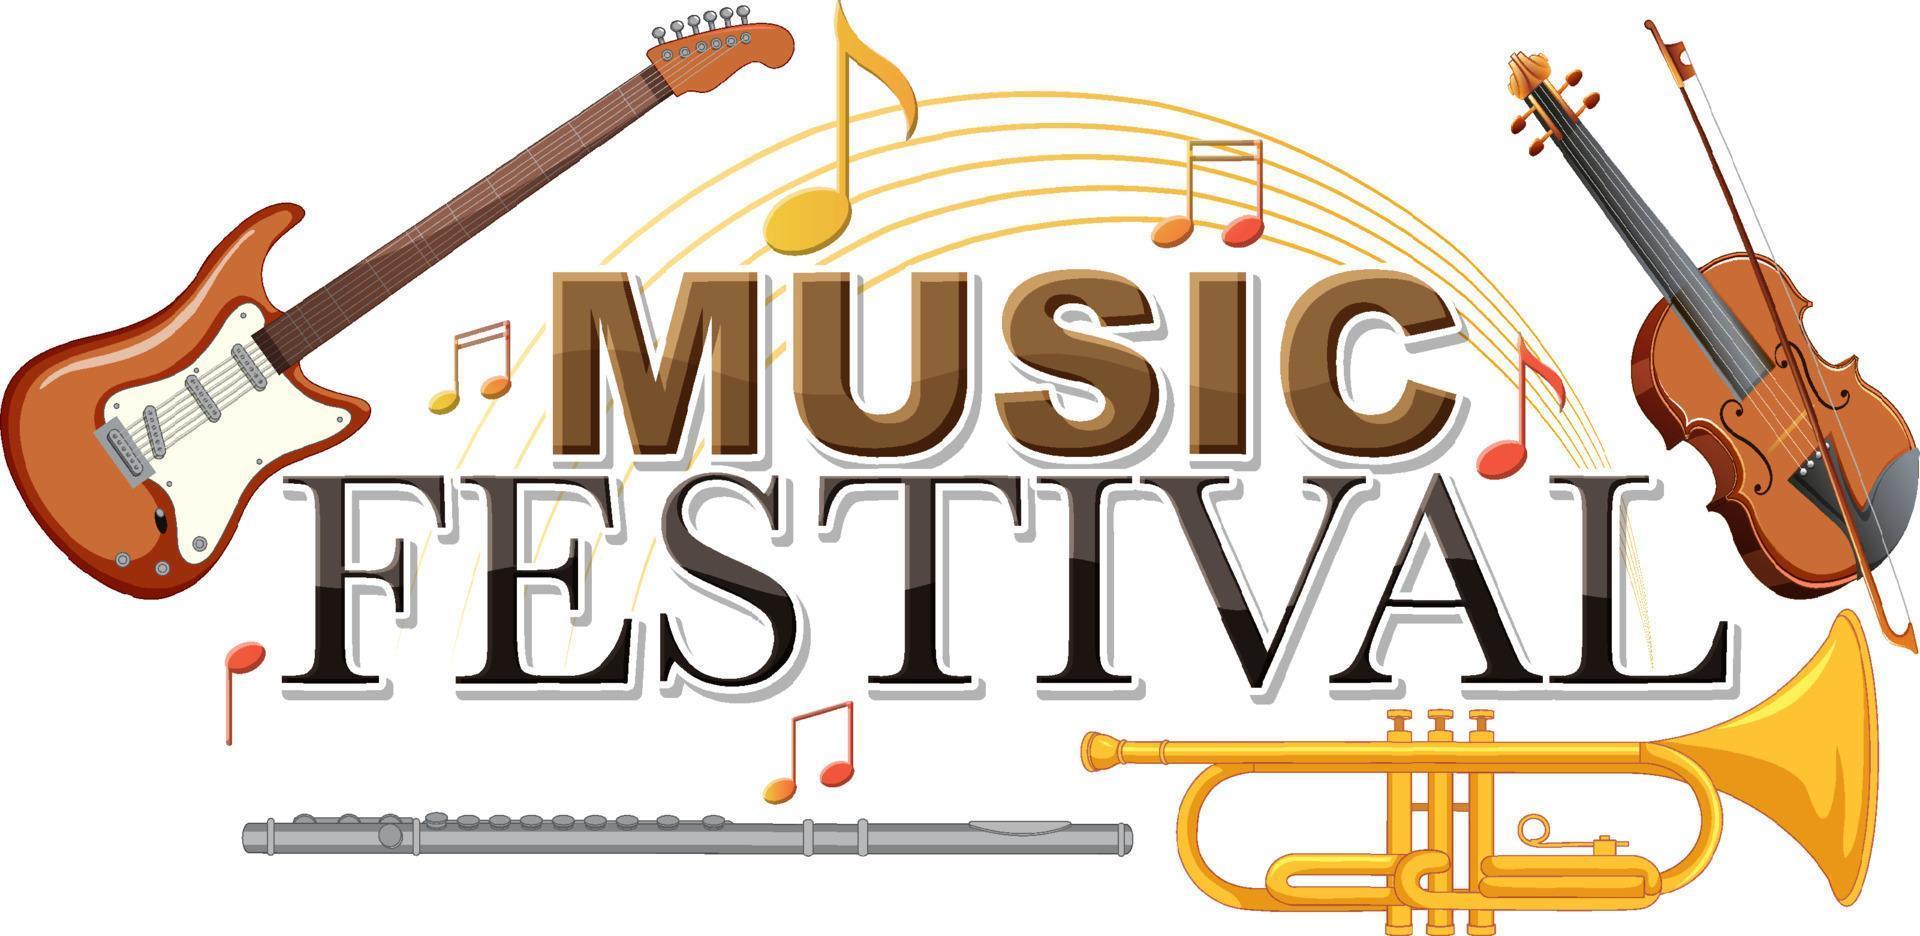 musikfestivaltext mit musikinstrumenten vektor